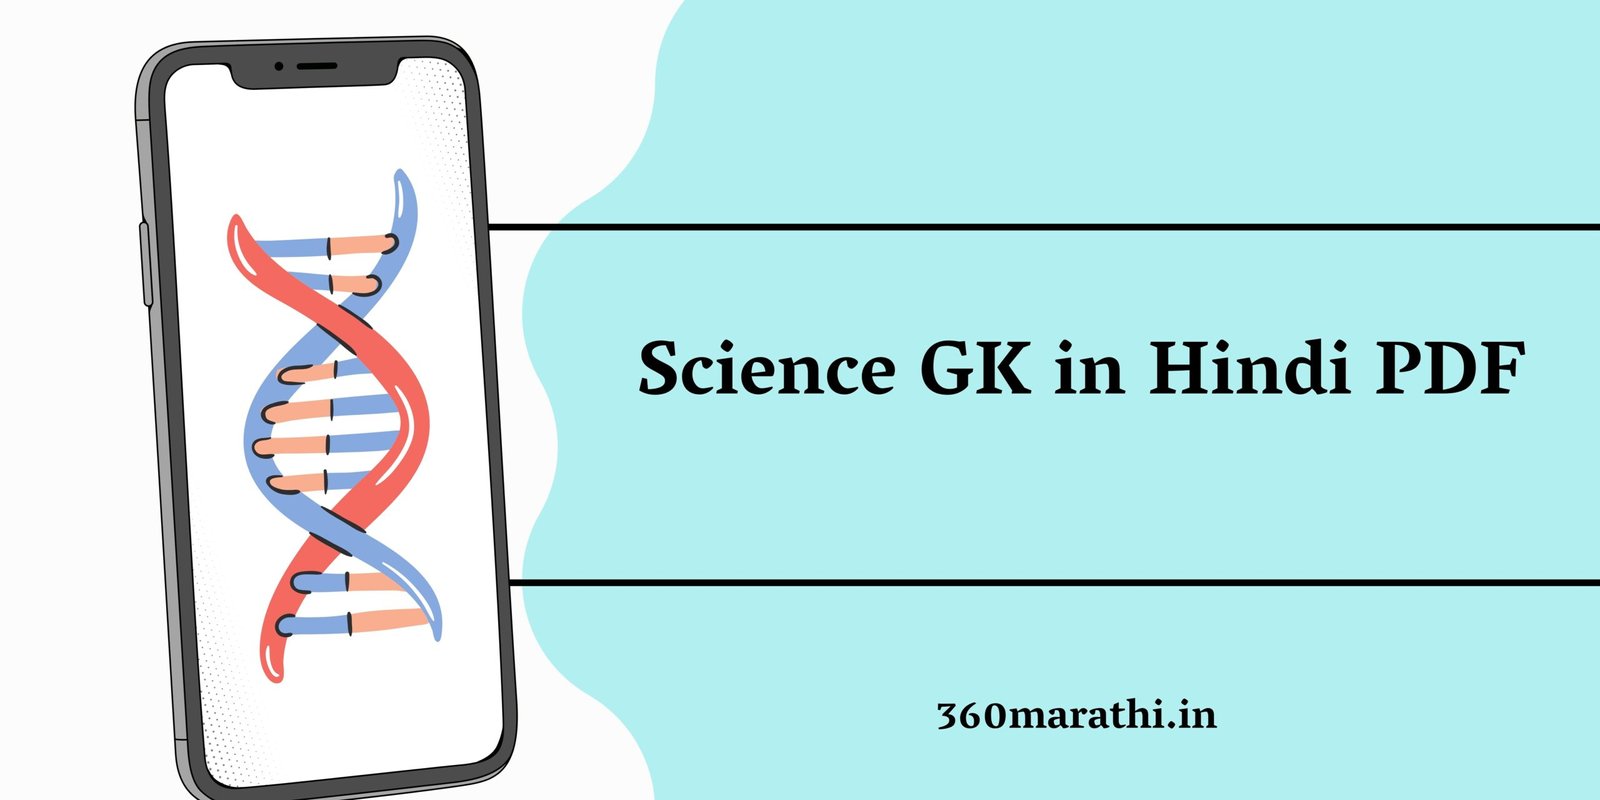 Science GK in Hindi PDF